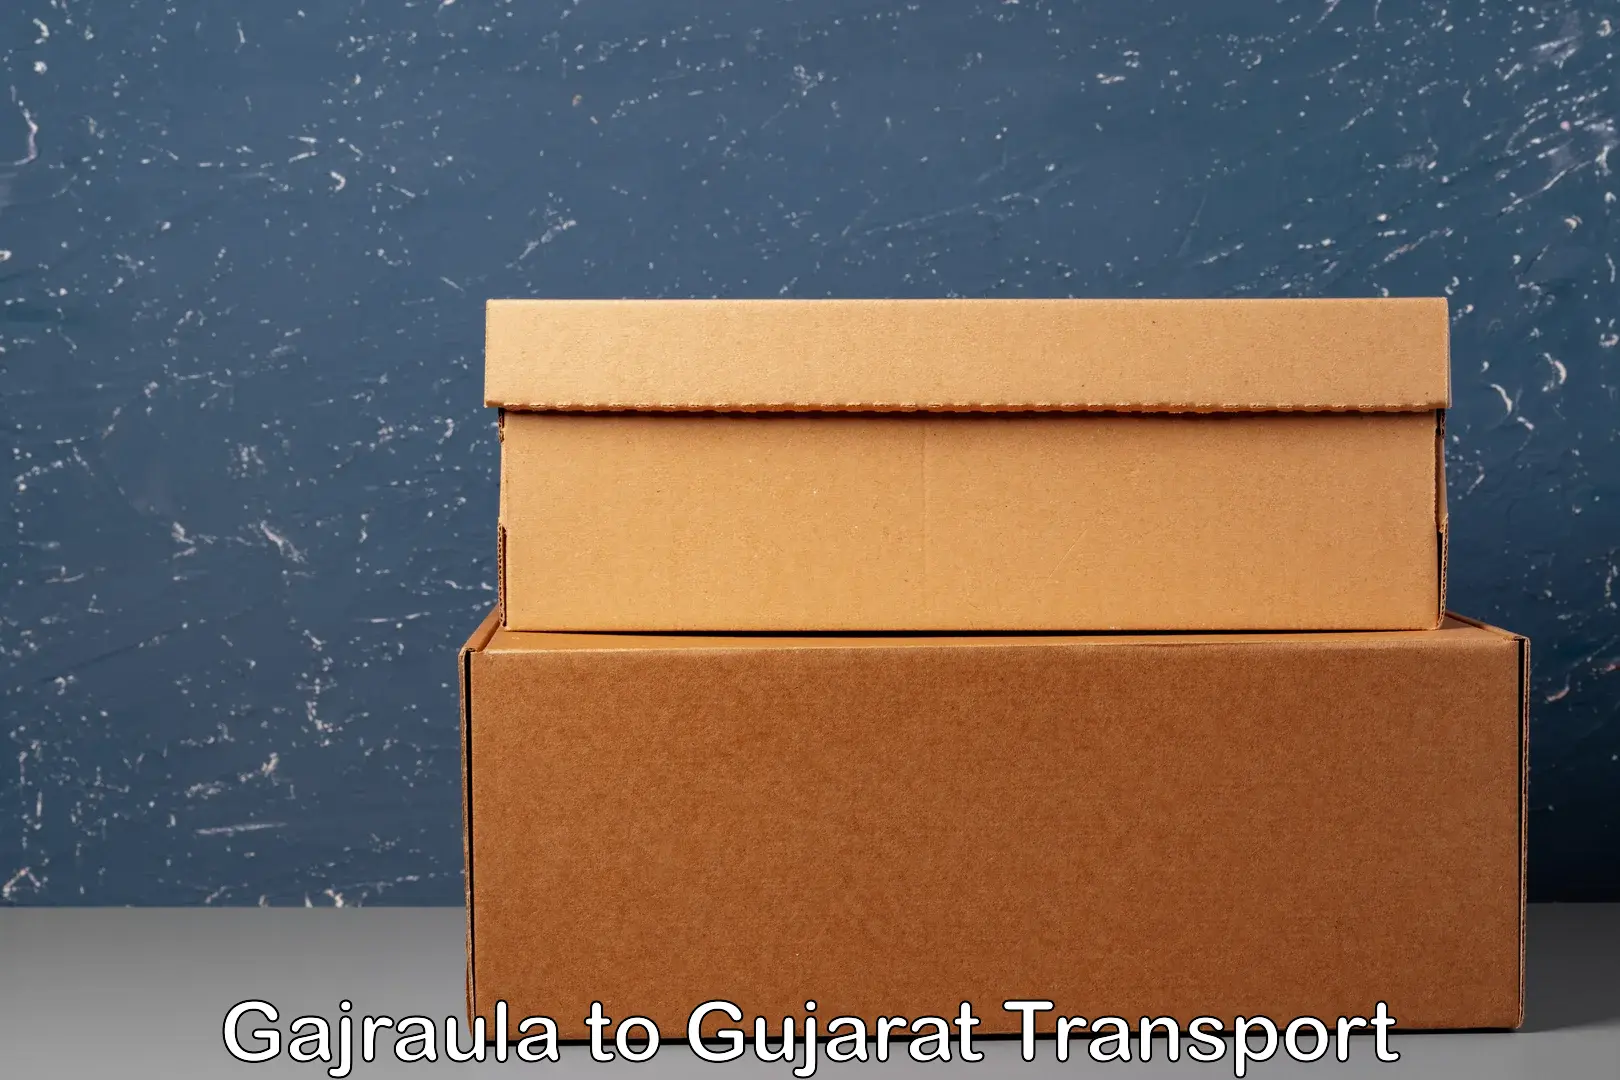 Shipping partner Gajraula to Gujarat